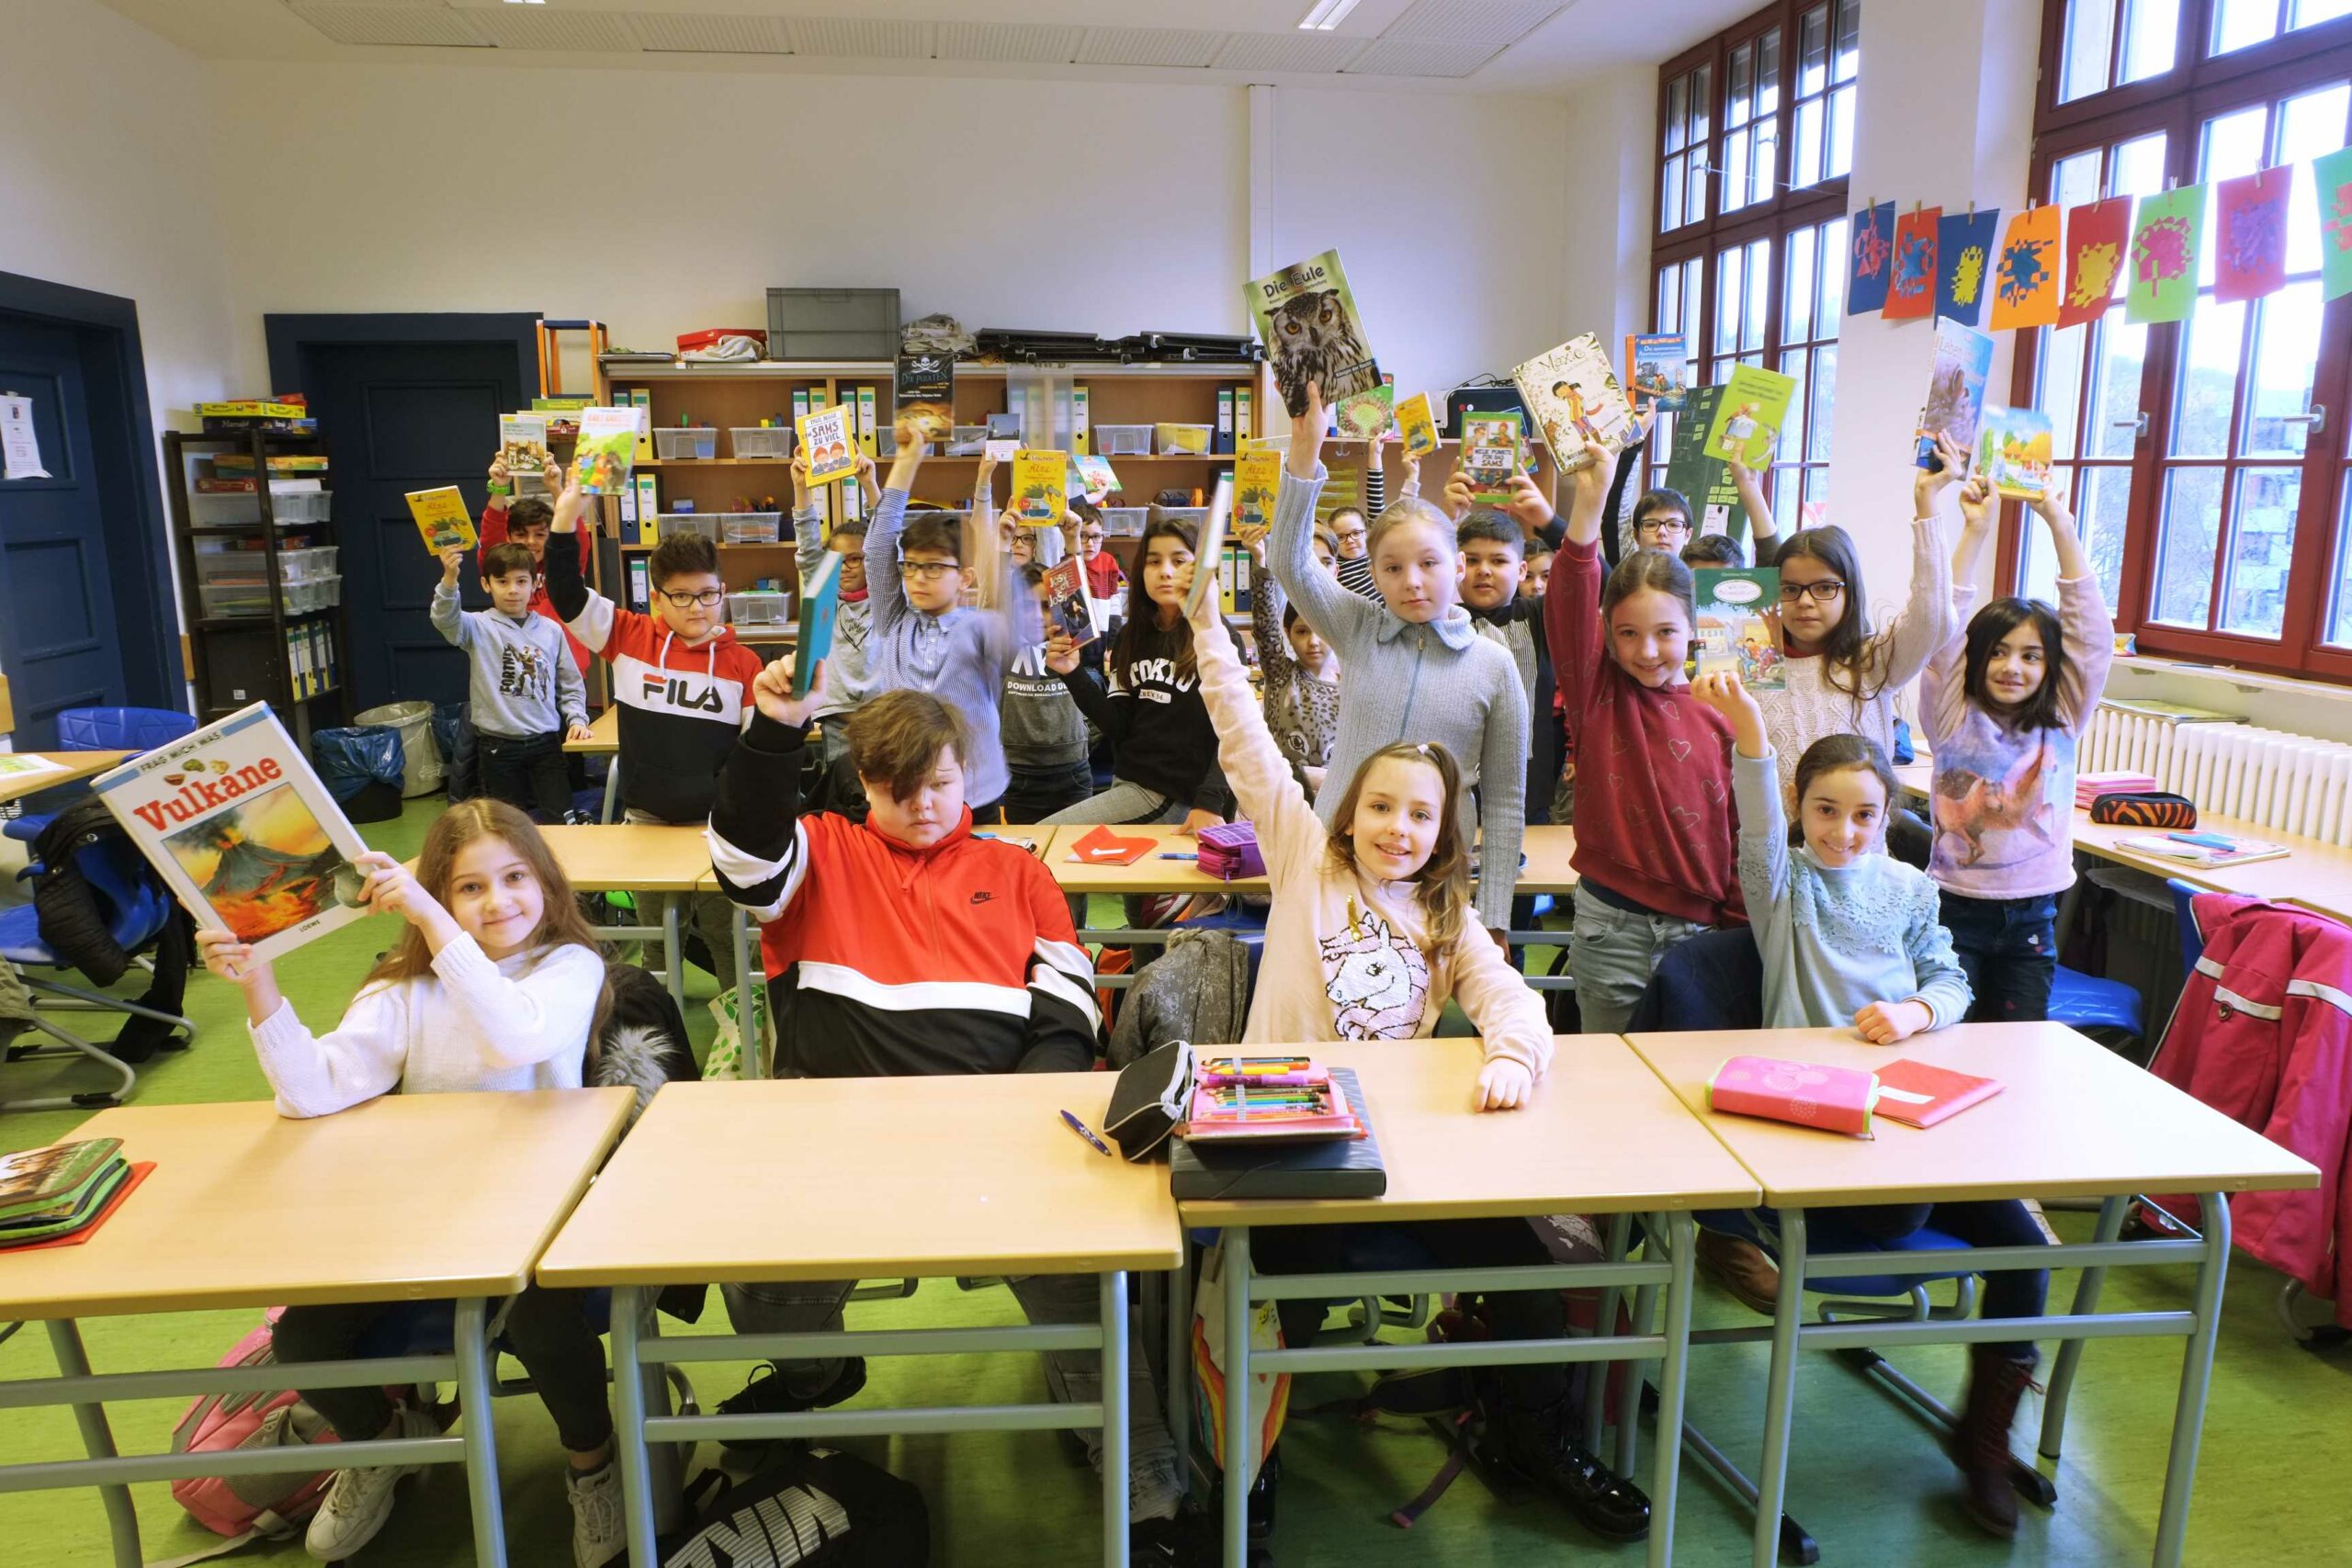 Auf diesem bild sehen Sie Schülerinnen und Schüler in einem Klassenzimmer, welche Bücher in die Luft halten.